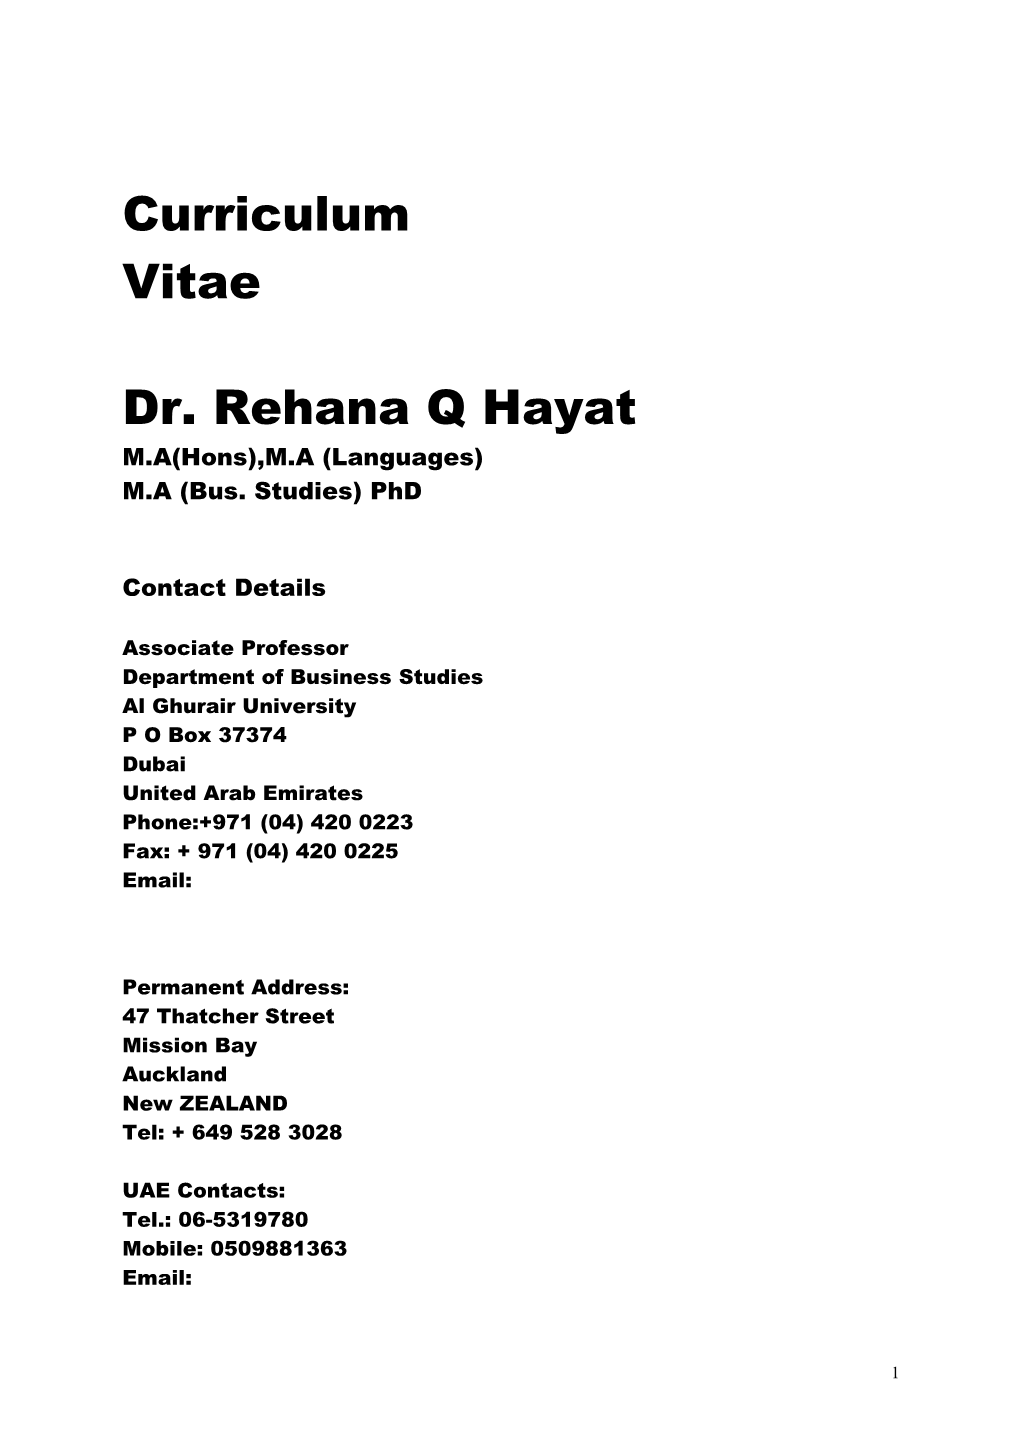 Dr. Rehana Q Hayat